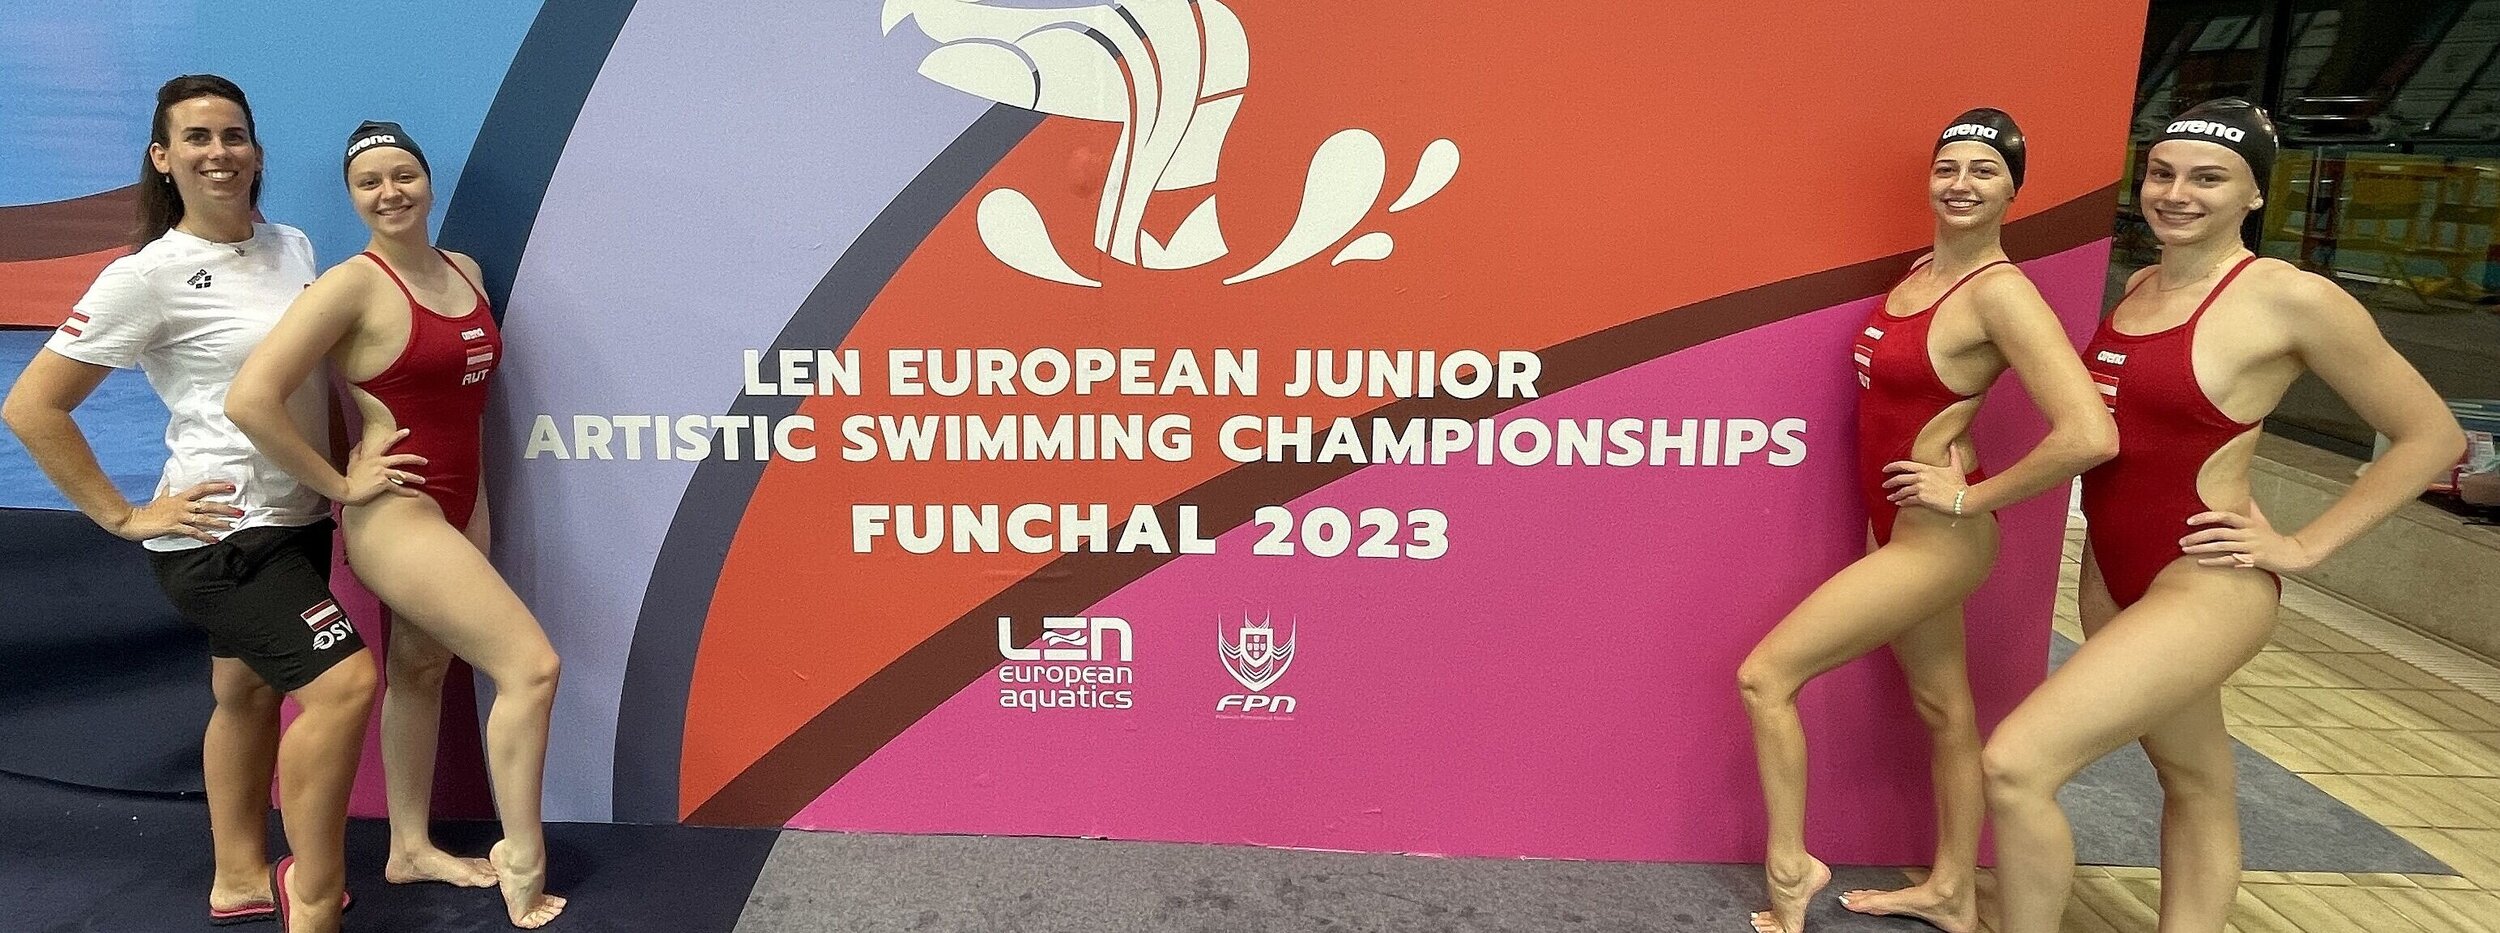 4 Schwimmerinnen vor dem Eventplakat Funchal